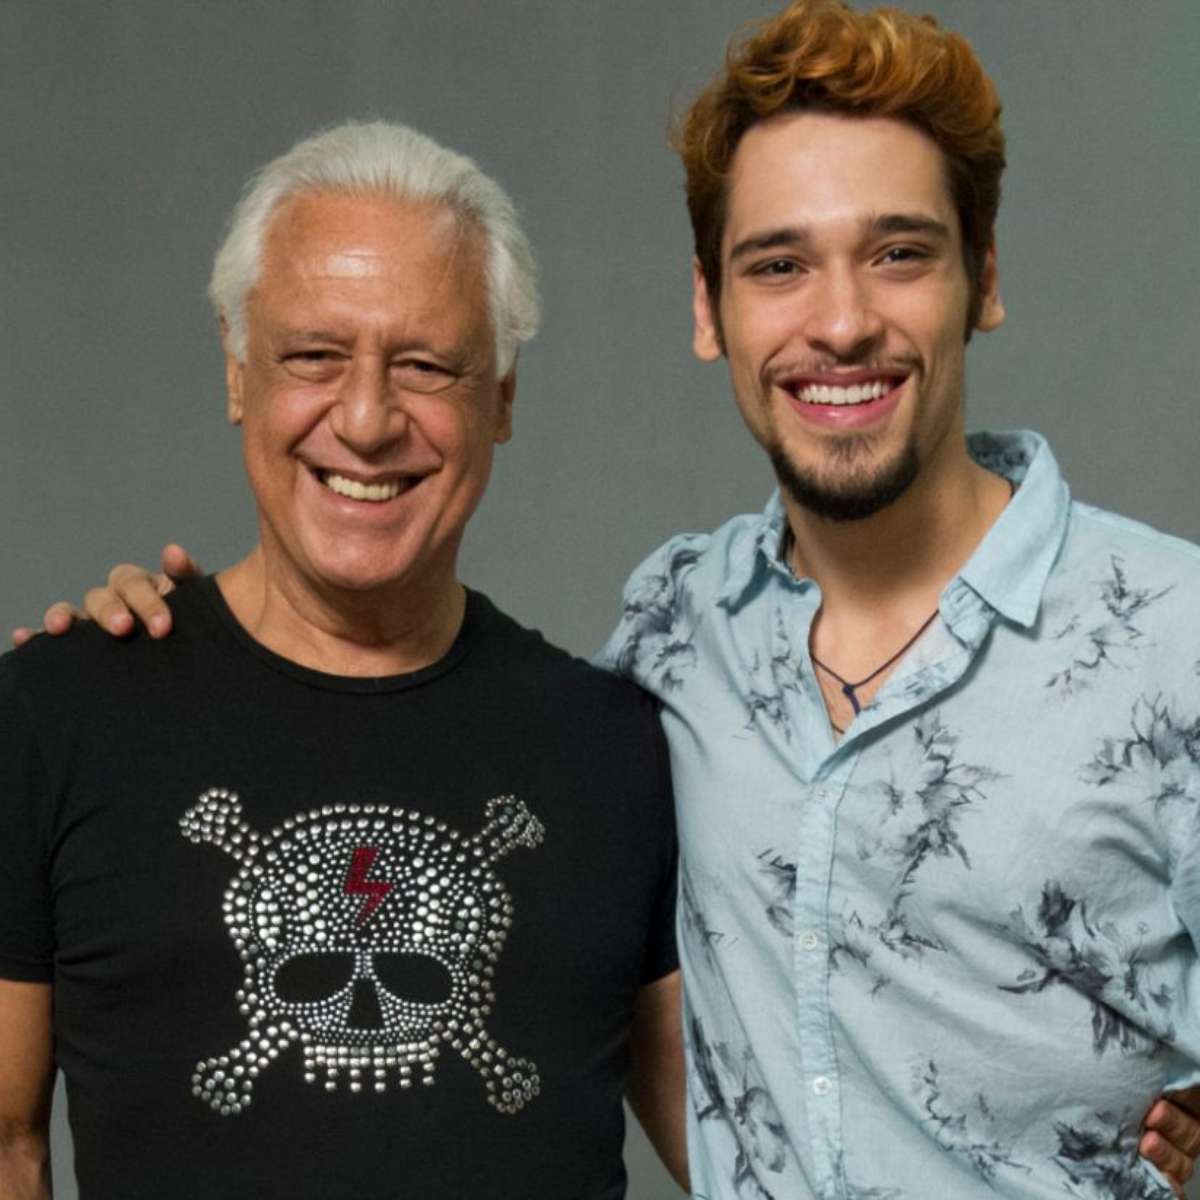 Antonio Fagundes fala pela primeira vez sobre namoro do filho com ator